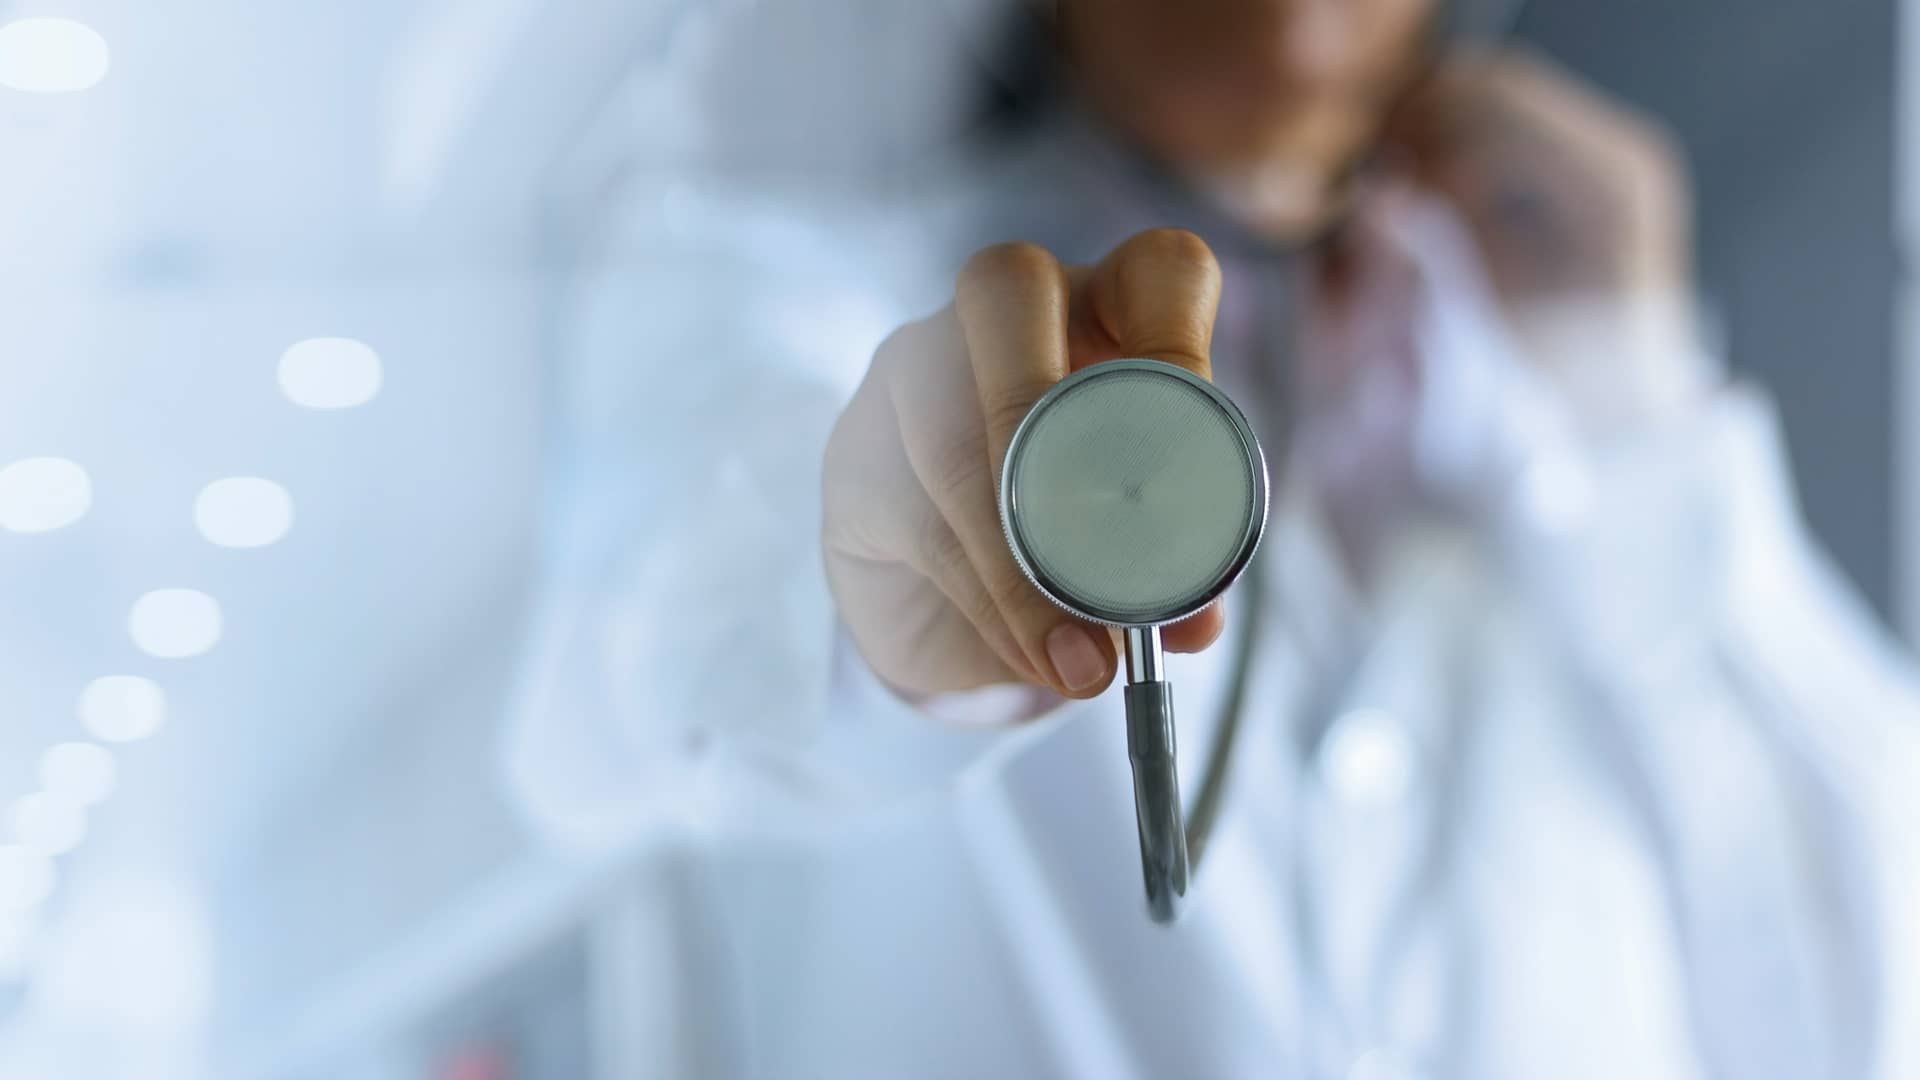 Medica con bata blanca utilizando un estetoscopio con el espectador representando a los medicos del servicio de doctorgo de yoigo